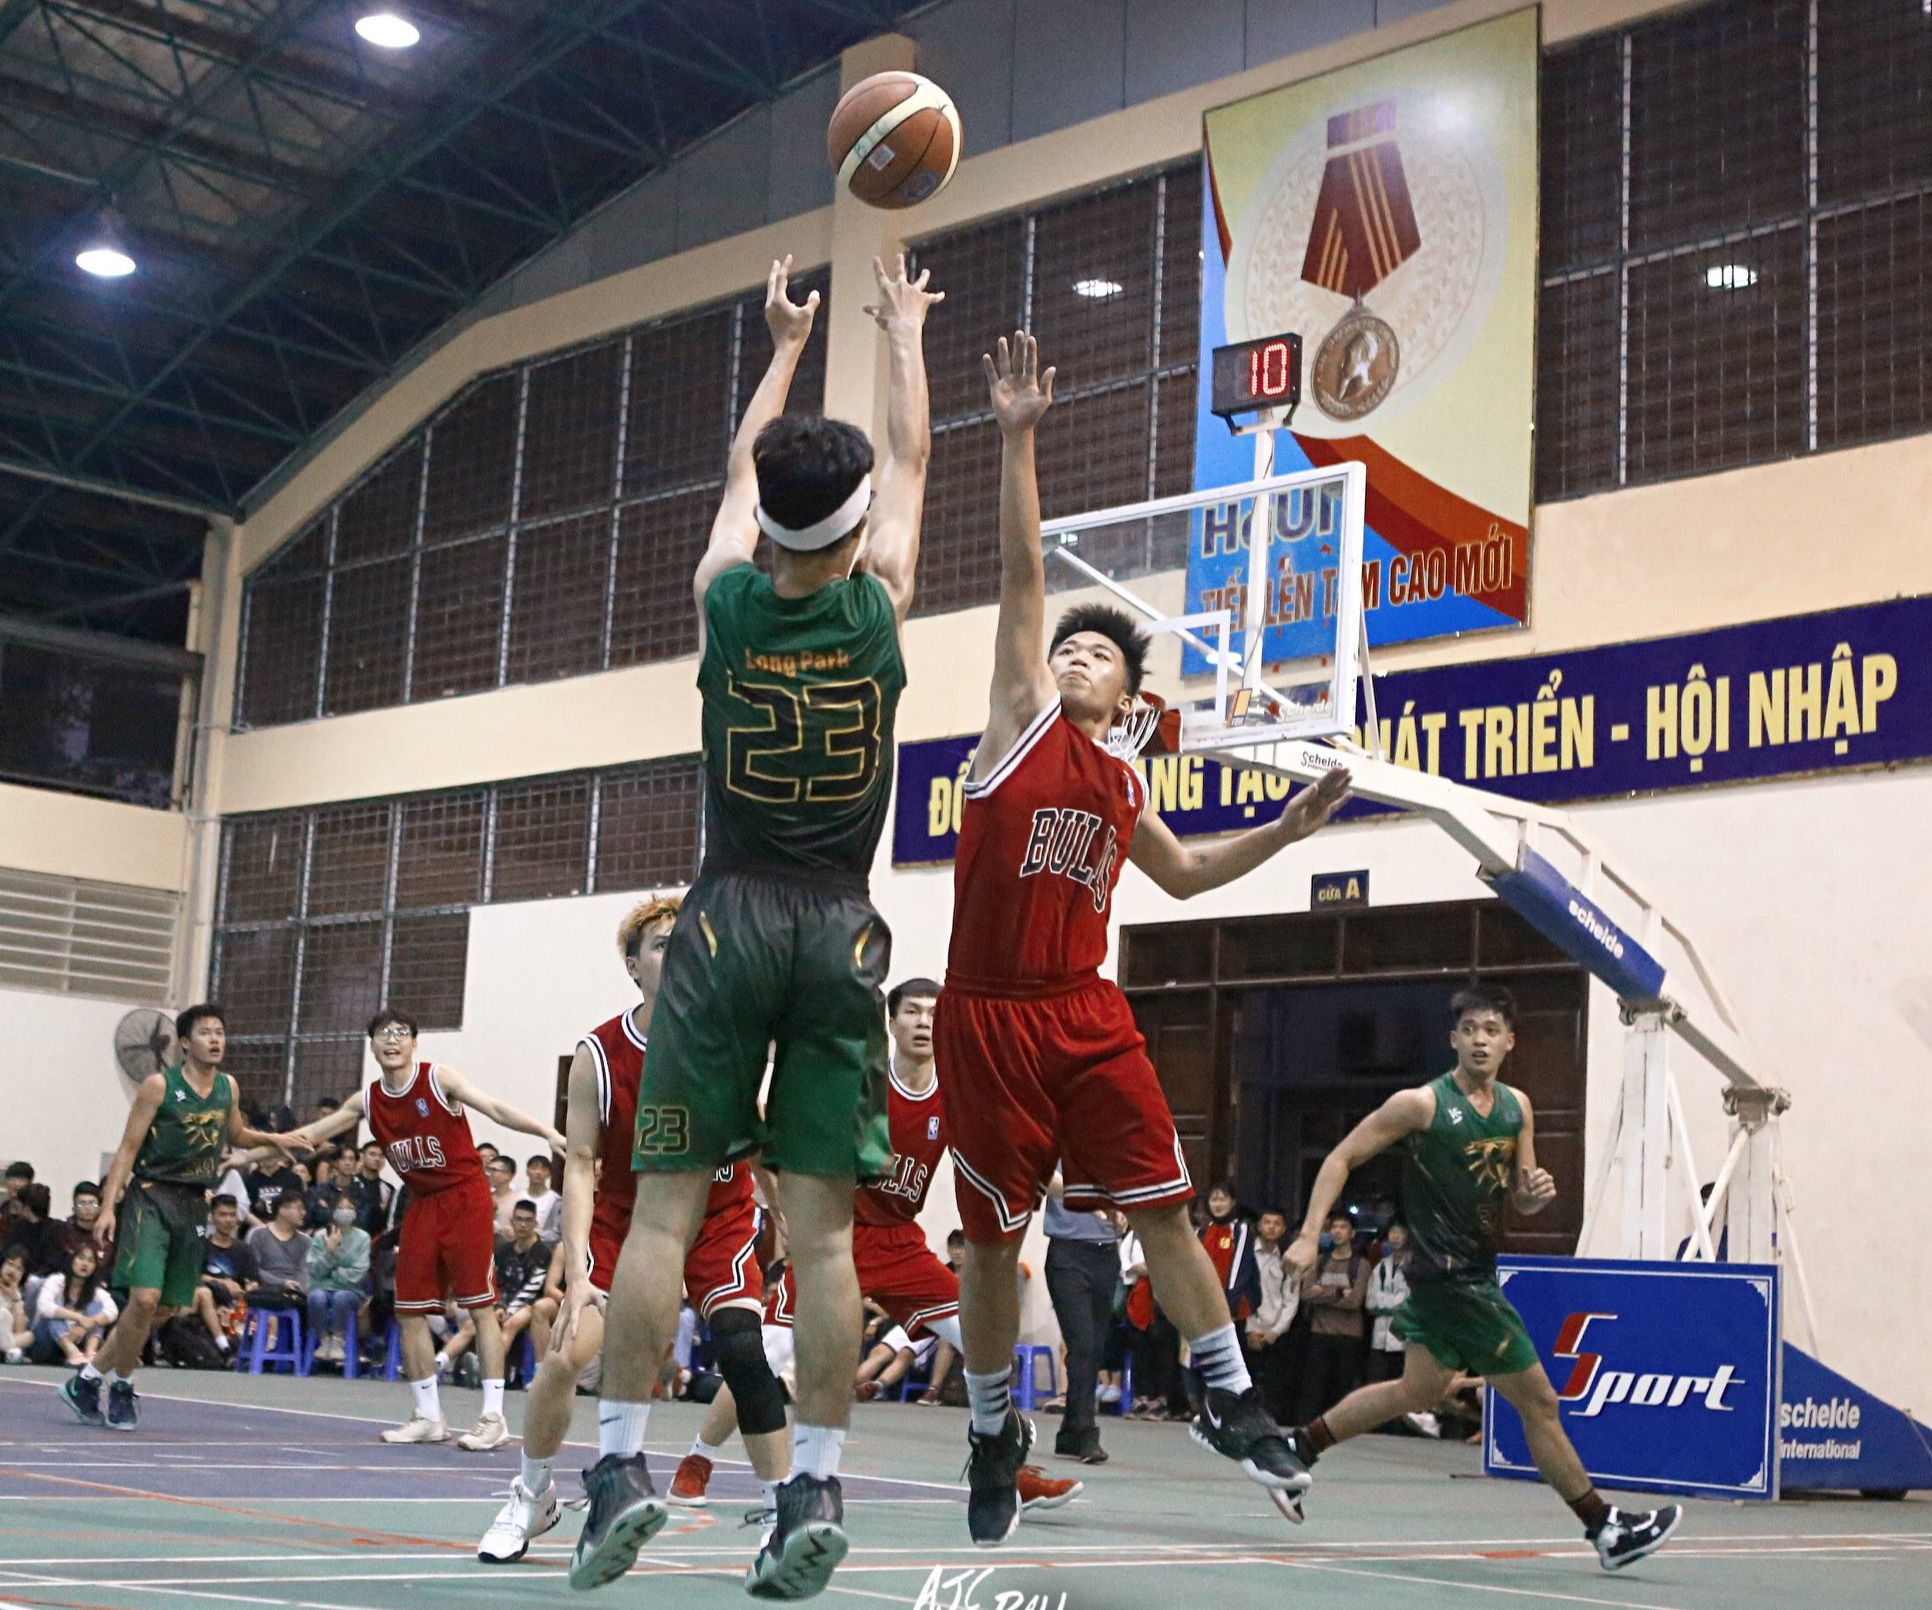 Giải bóng rổ sinh viên toàn quốc chính thức trở lại với thể thức thi đấu mới đầy hấp dẫn - Ảnh 5.